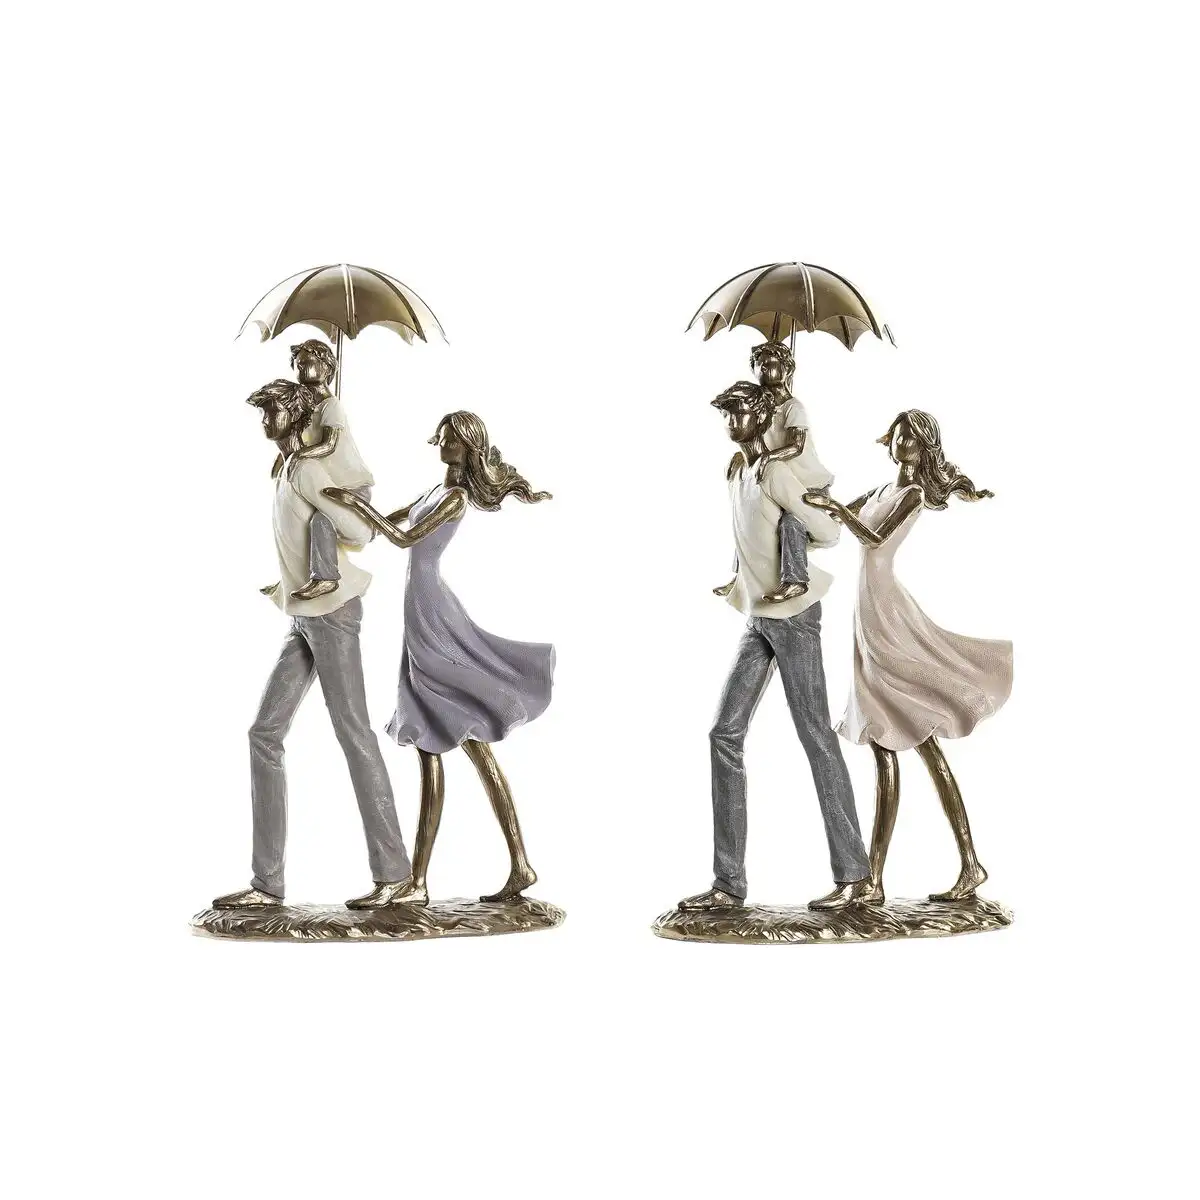 Figurine decorative dkd home decor parapluie 17 5 x 8 5 x 31 cm cuivre famille 2 unites _9506. DIAYTAR SENEGAL - Où Choisir est un Voyage Cultuel. Explorez notre boutique en ligne et découvrez des produits qui célèbrent la richesse et la diversité culturelle du Sénégal.